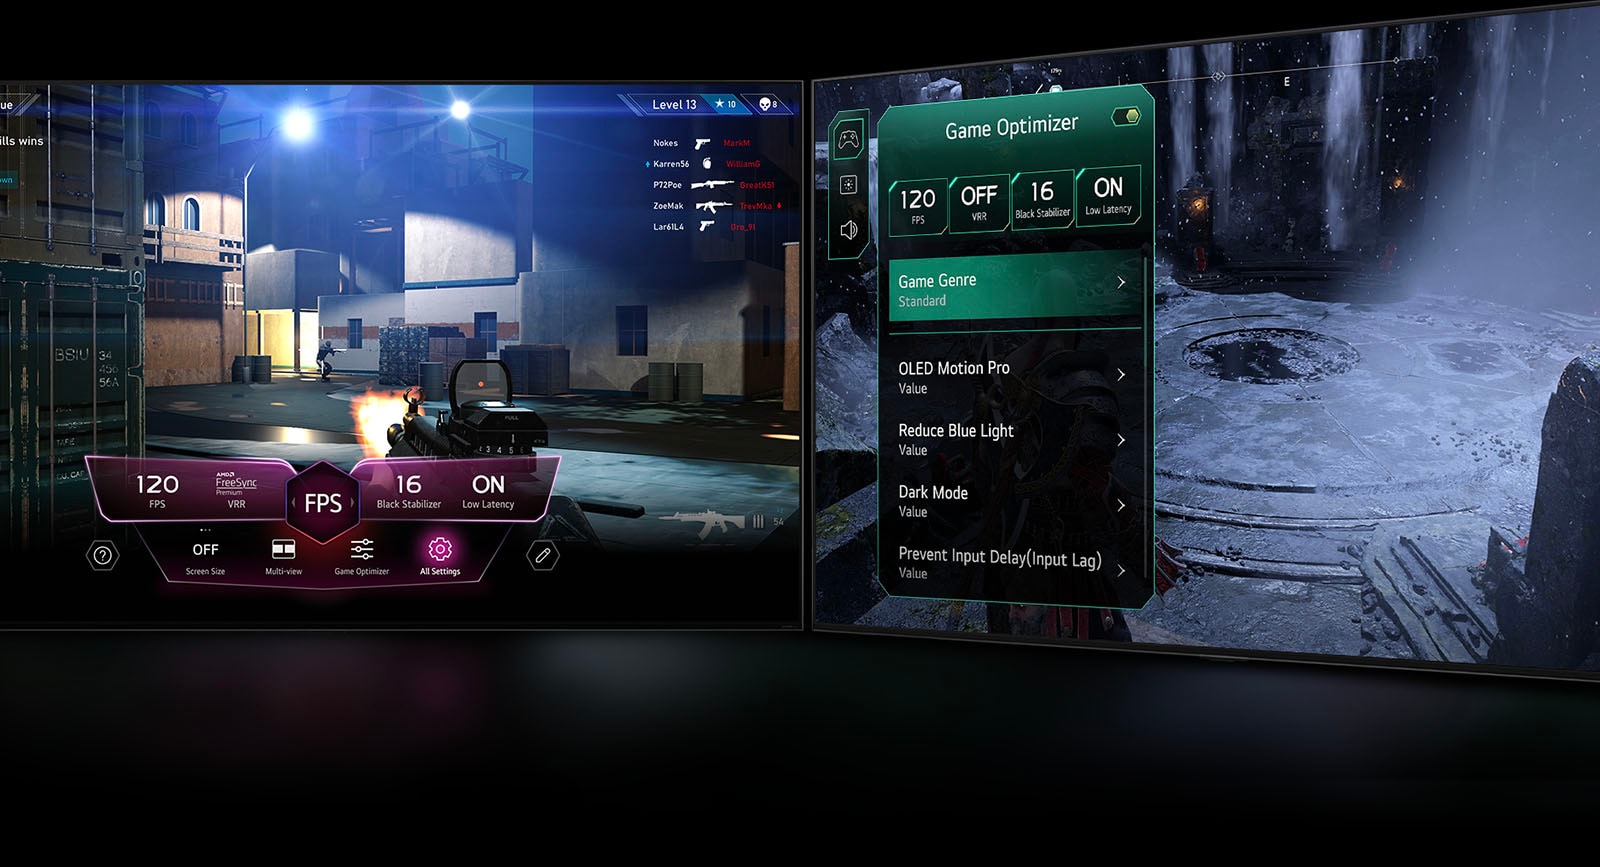 Una escena de juego FPS con el panel de control del juego apareciendo sobre la pantalla durante la partida. Una escena oscura e invernal con el menú optimizador de juego apareciendo sobre el juego. 